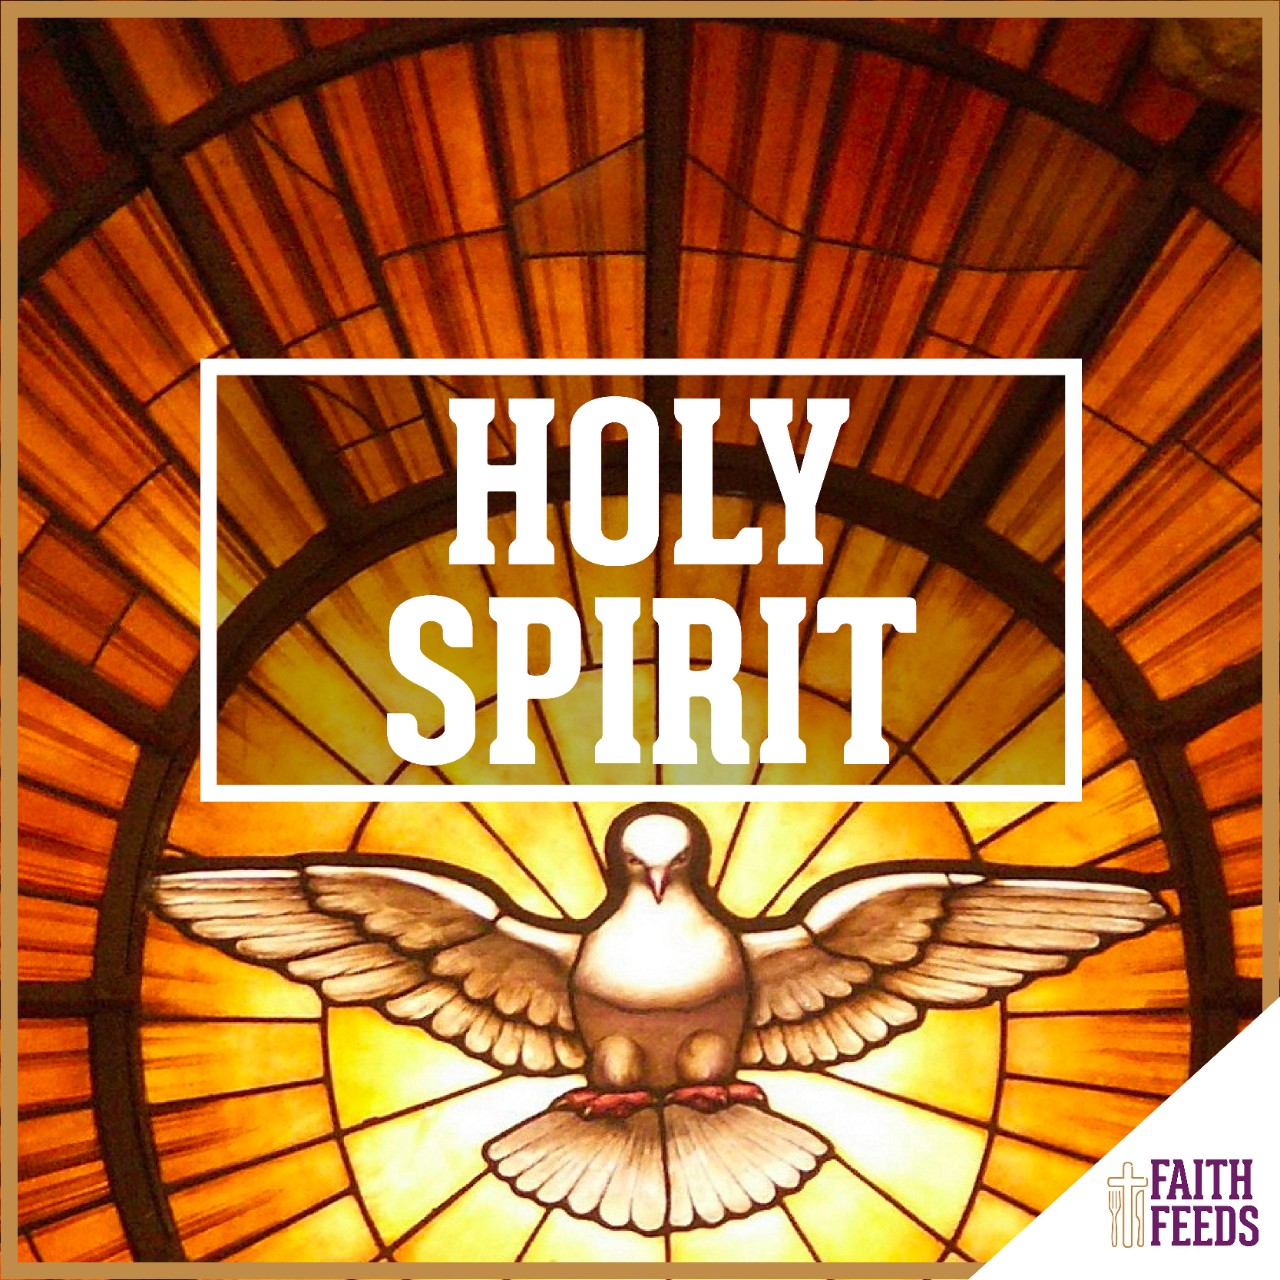 Easter FAITH FEEDS: Holy Spirit